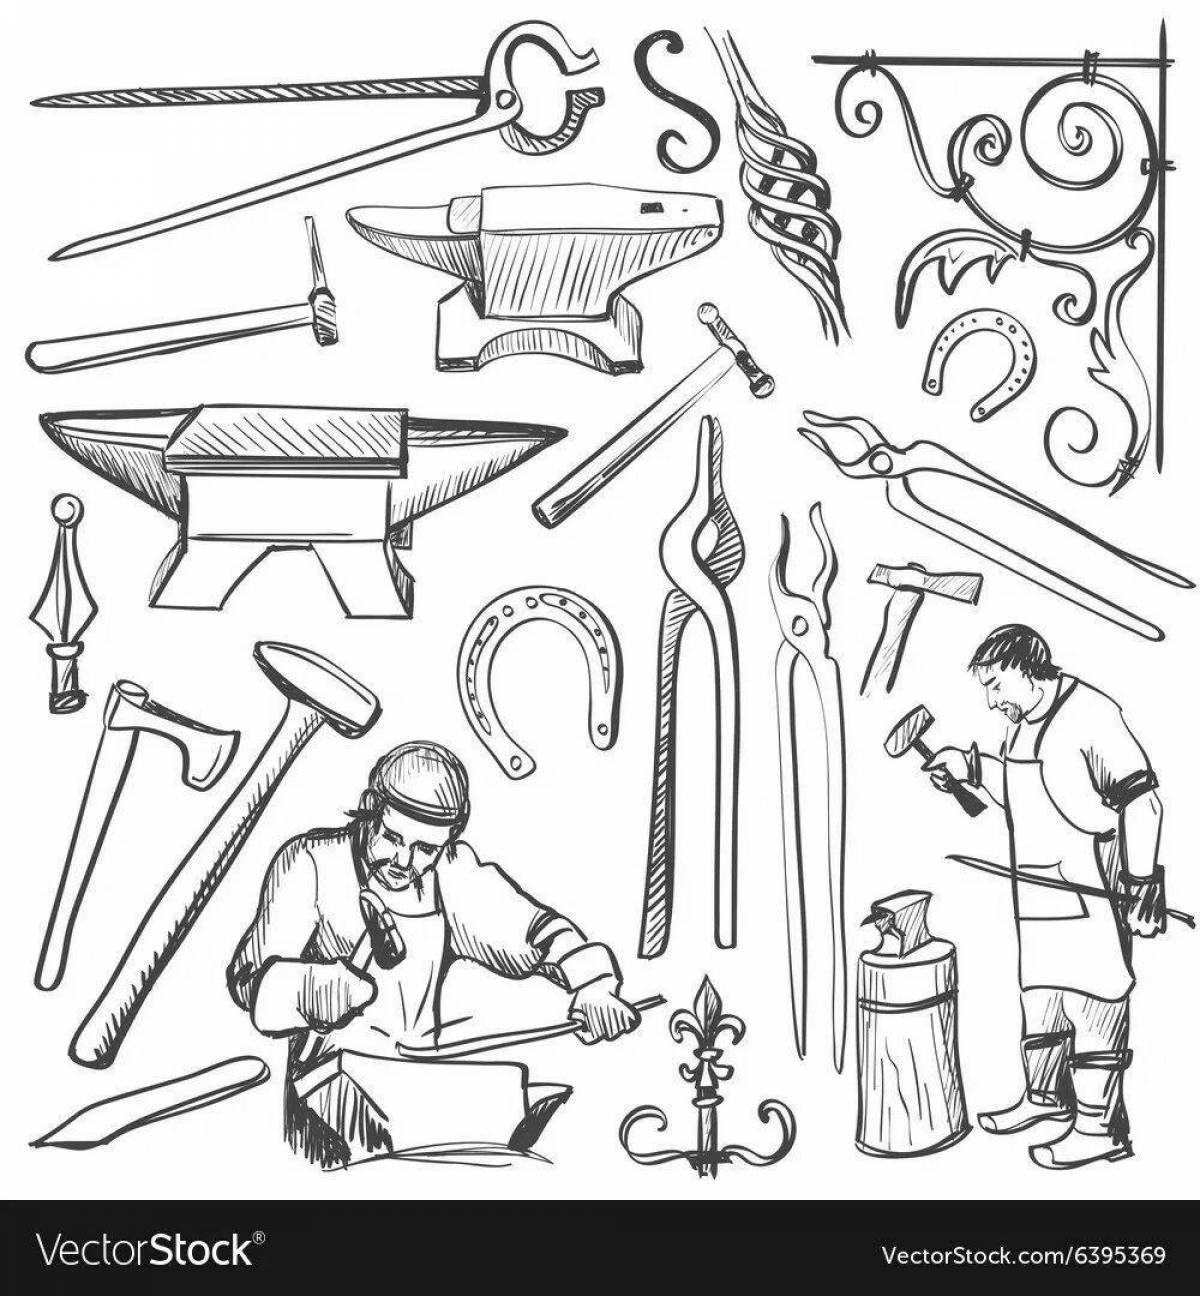 Fun blacksmith coloring book